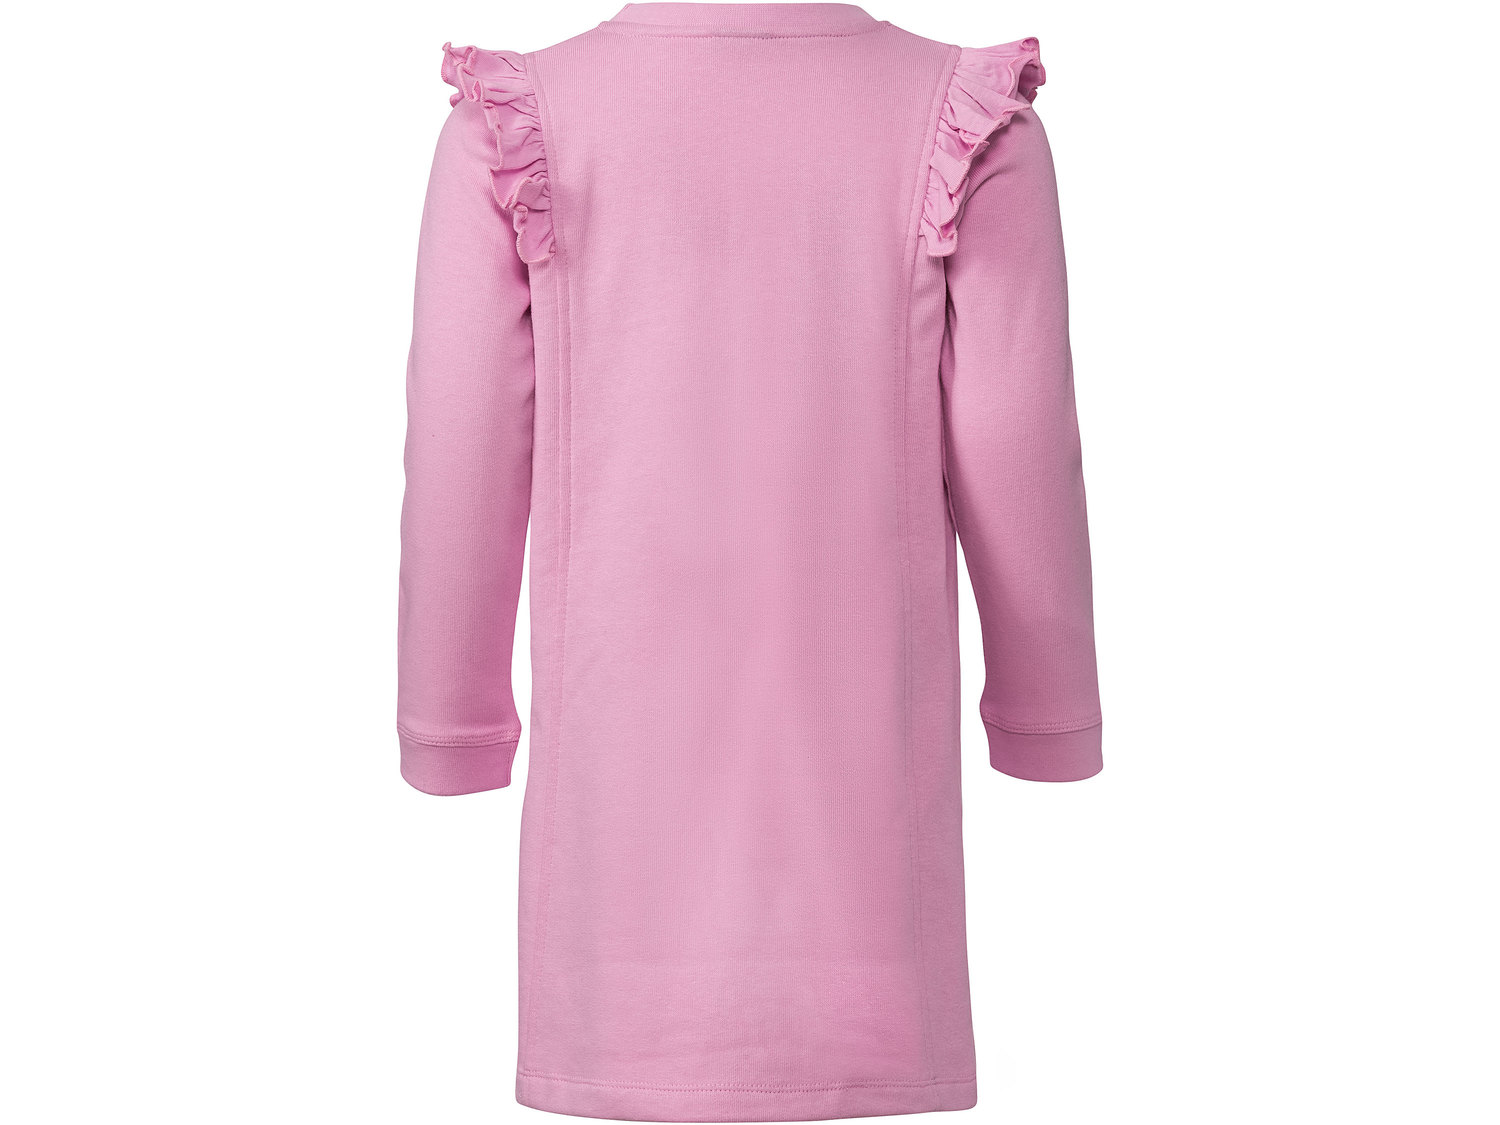 Sukienka Lupilu, cena 14,99 PLN 
- rozmiary: 86-116
- wysoka zawartość bawełny
- ...